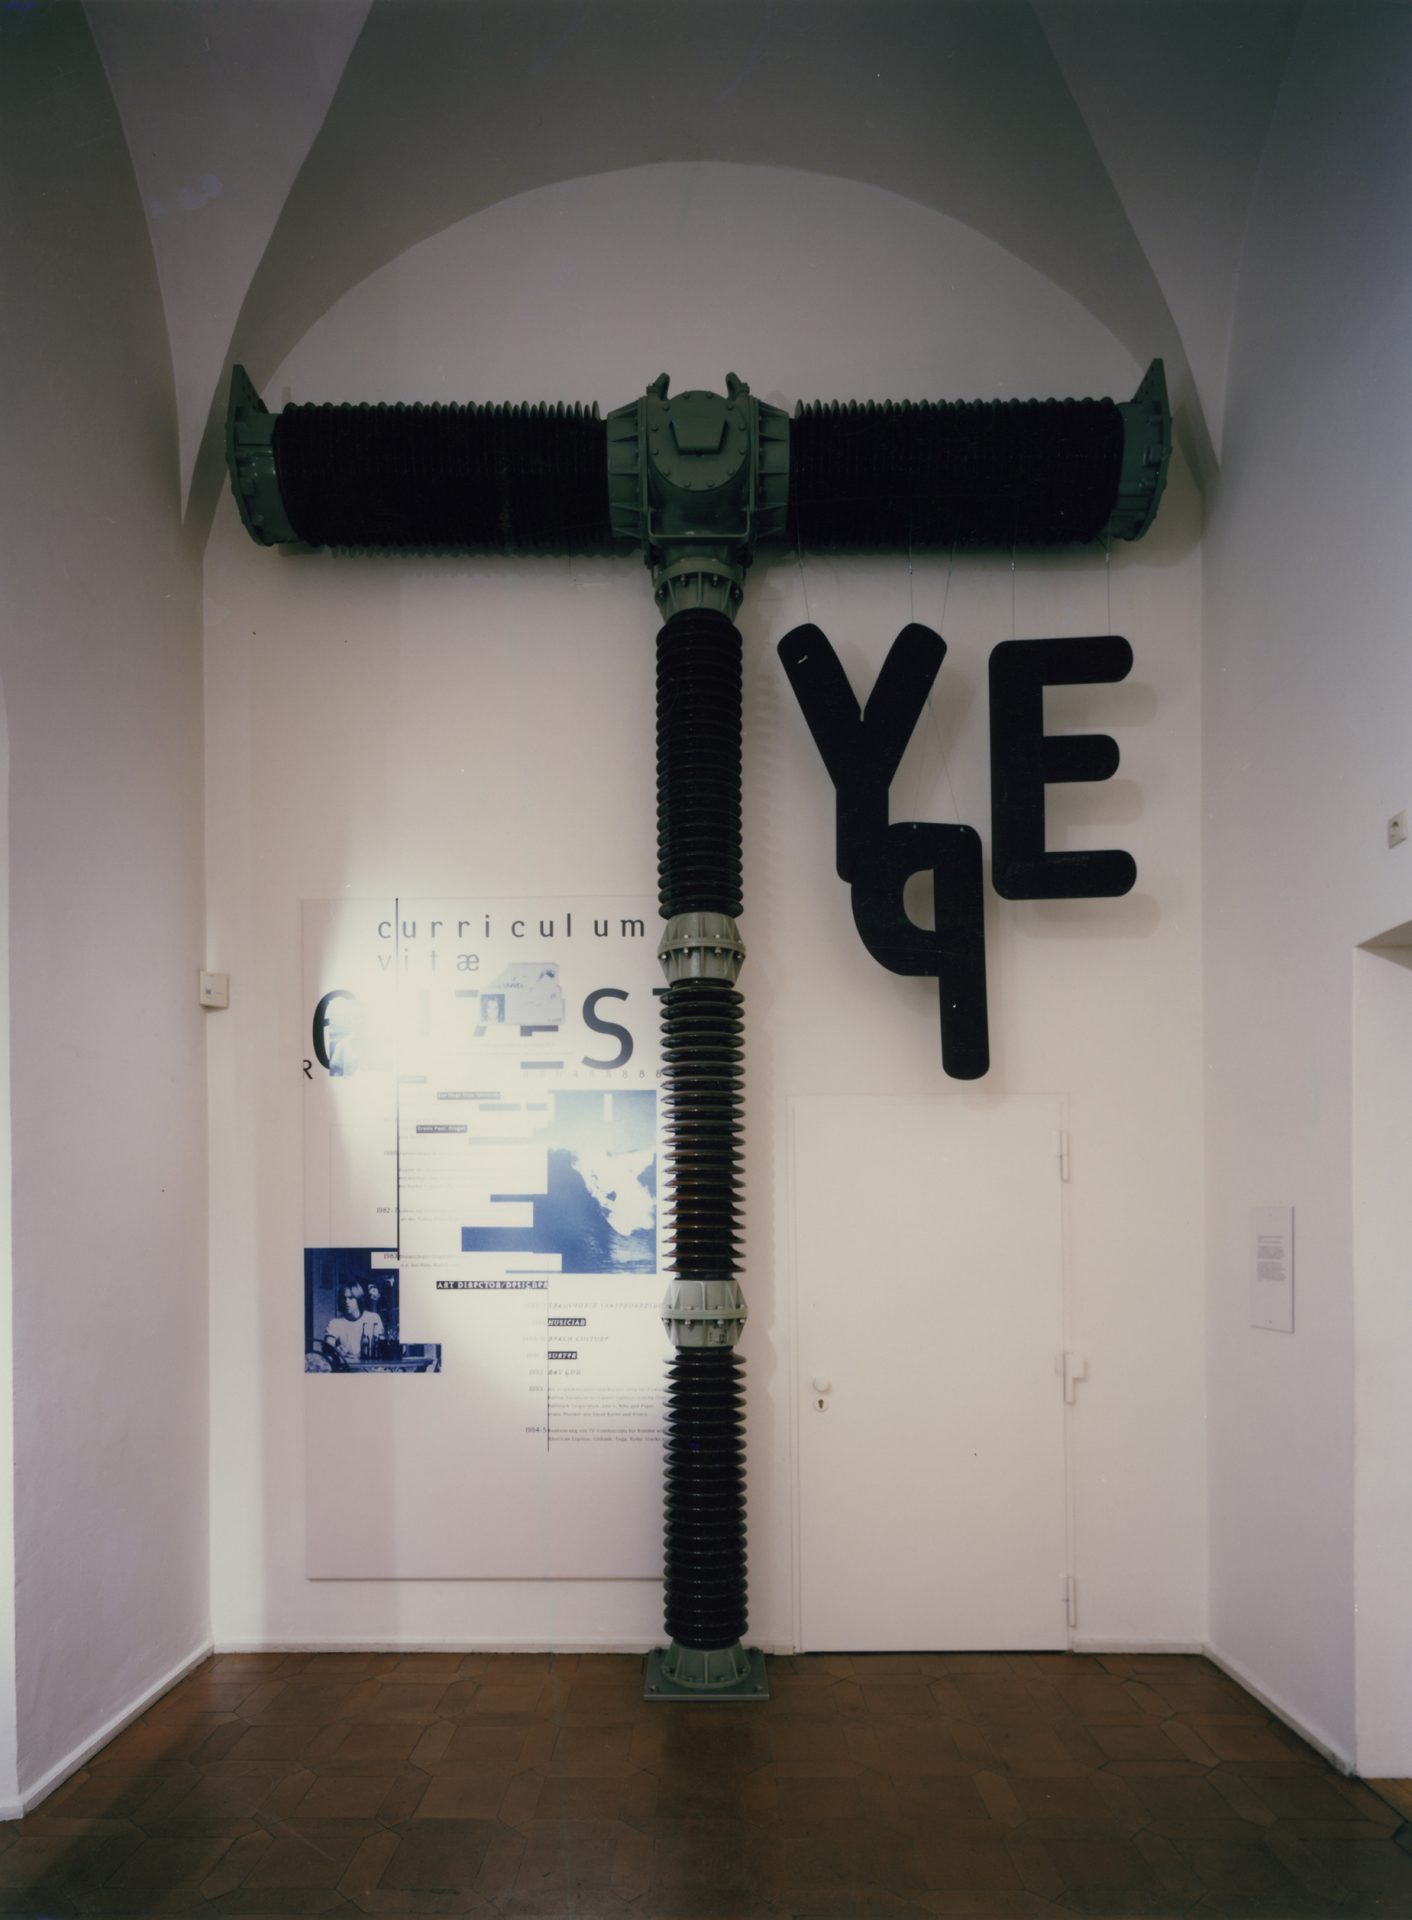 Ein großes Objekt in einem weißen schmalen Raum mit Gewölbe. Es erinnert von den Form her an einen Presslufthammer, an ihm hängen rechts überdimensional groß die Buchstaben "Y", "P" und "E". Links ein Plakat.